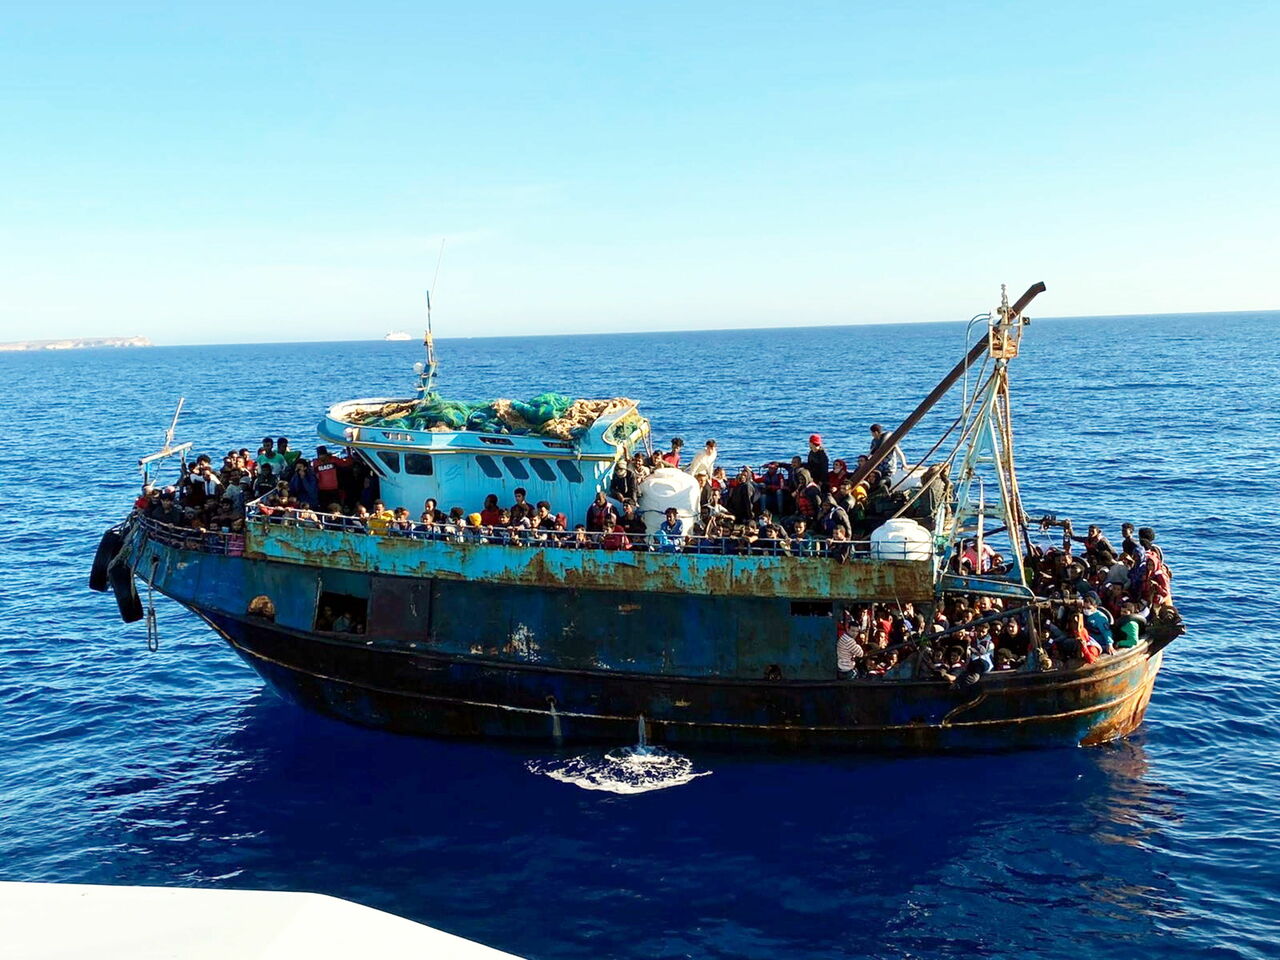 Barco del artista Bansky lleva 58 migrantes a Lampedusa